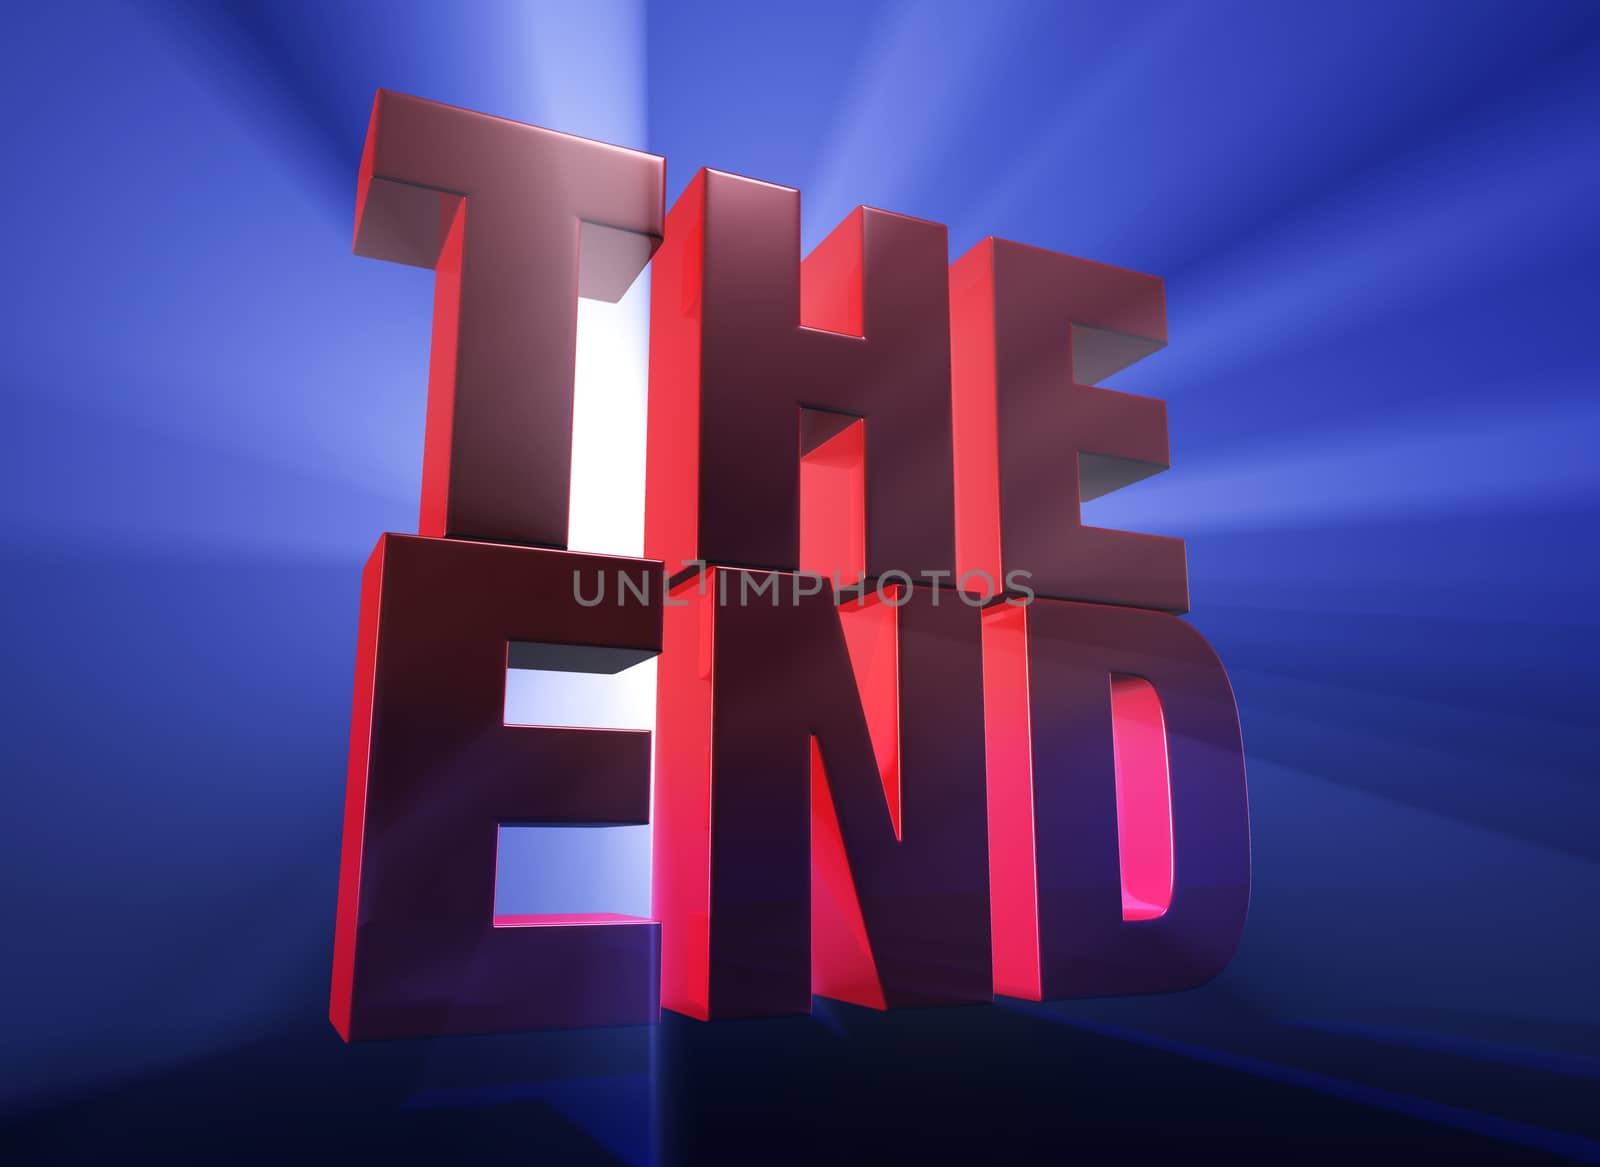 Dramatic End by Em3